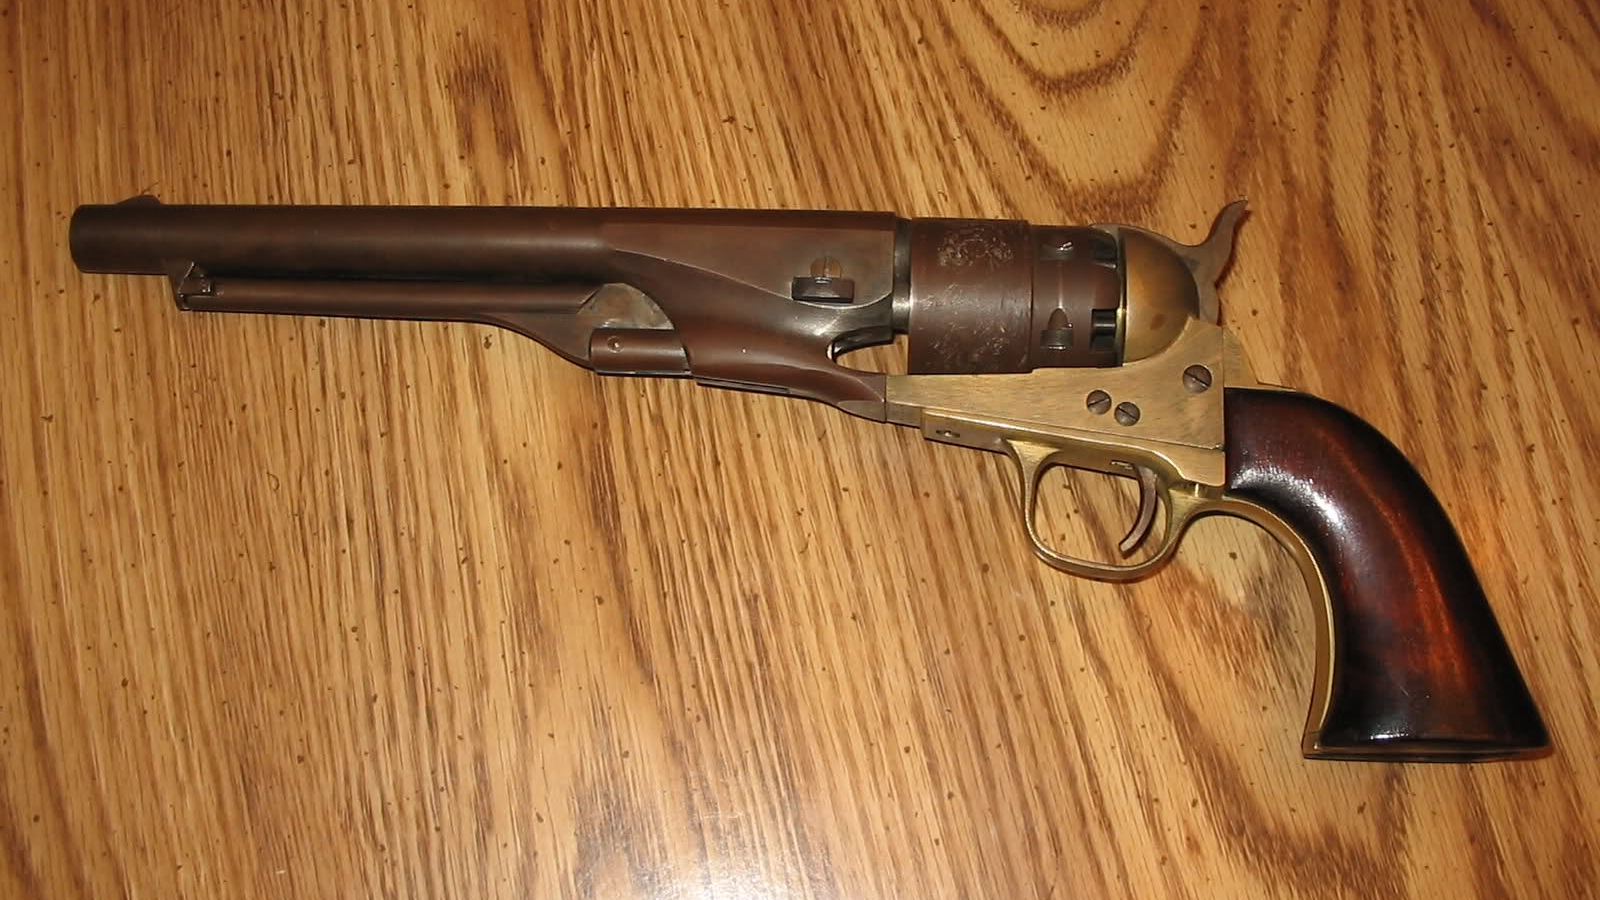 Скачать обои Кольт 1851 Морской Револьвер на телефон бесплатно